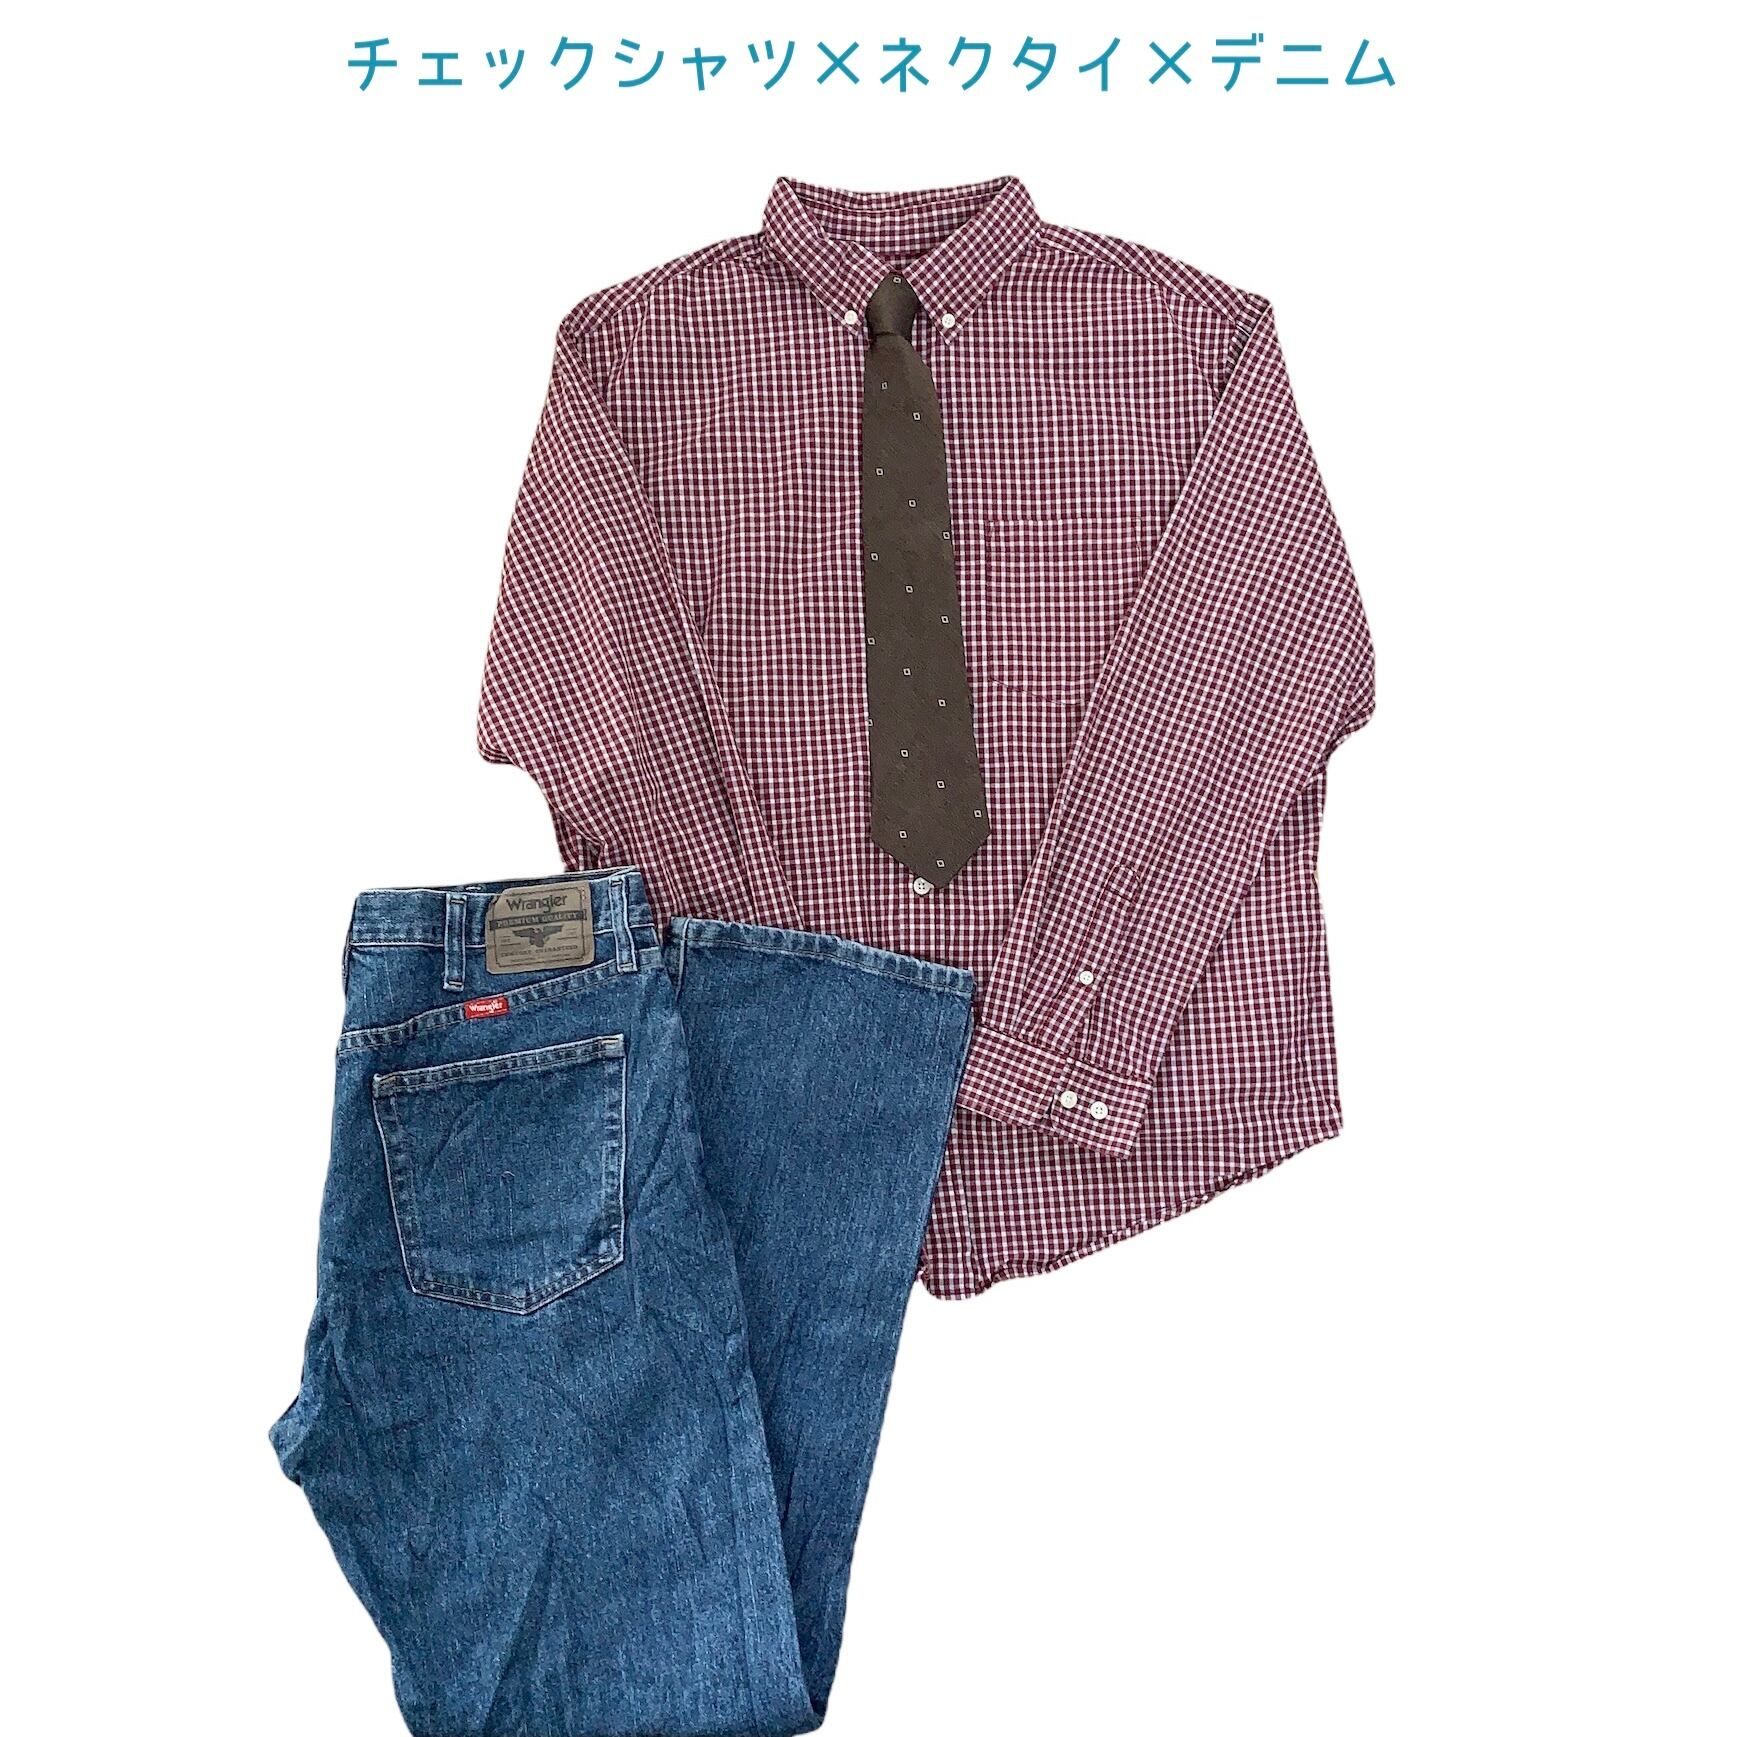 ネクタイスタイルCOMBO‼︎ シャツ × ネクタイ × ボトムスの3点セット